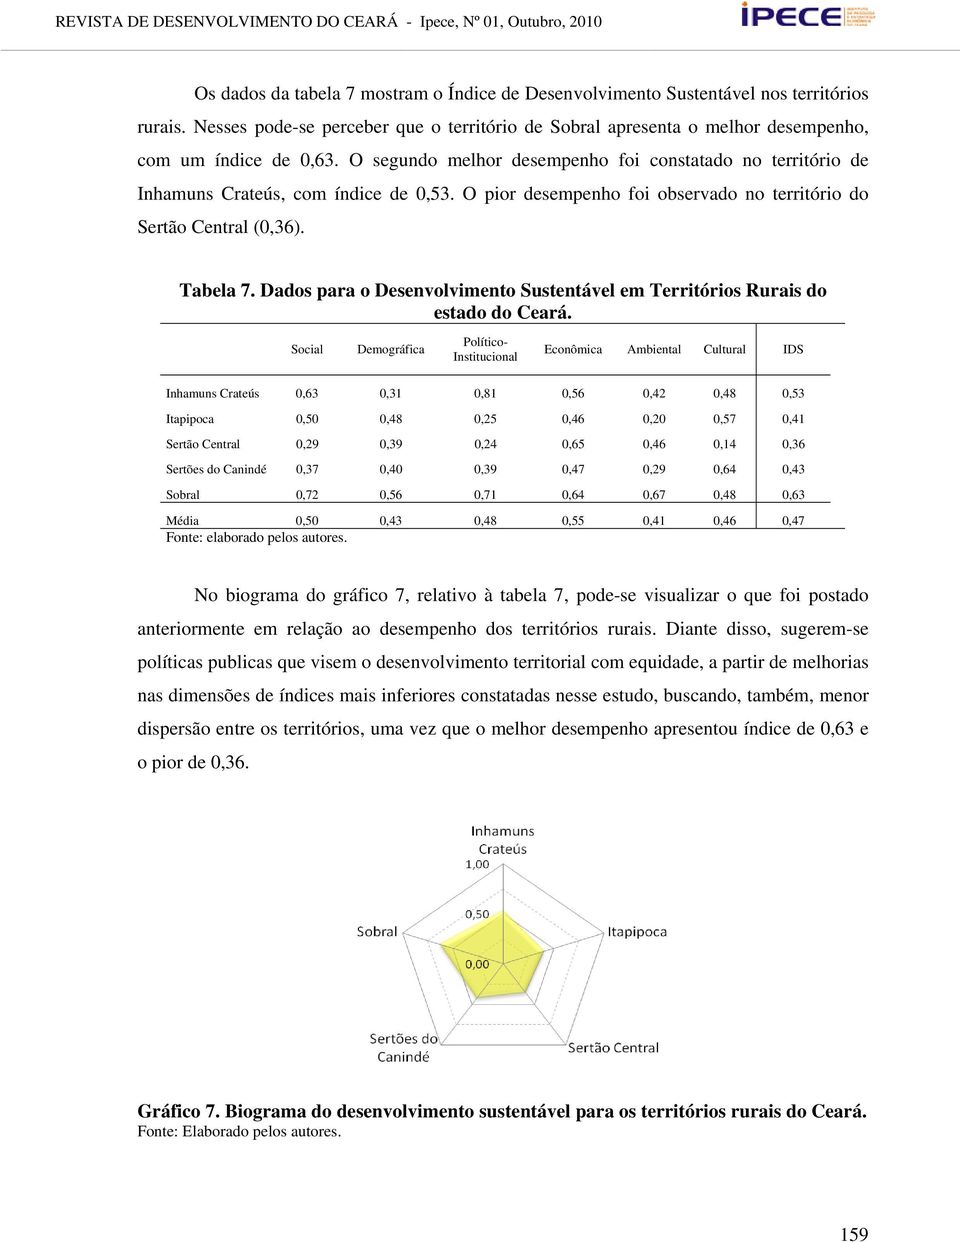 Dados para o Desenvolvimento Sustentável em Territórios Rurais do estado do Ceará.